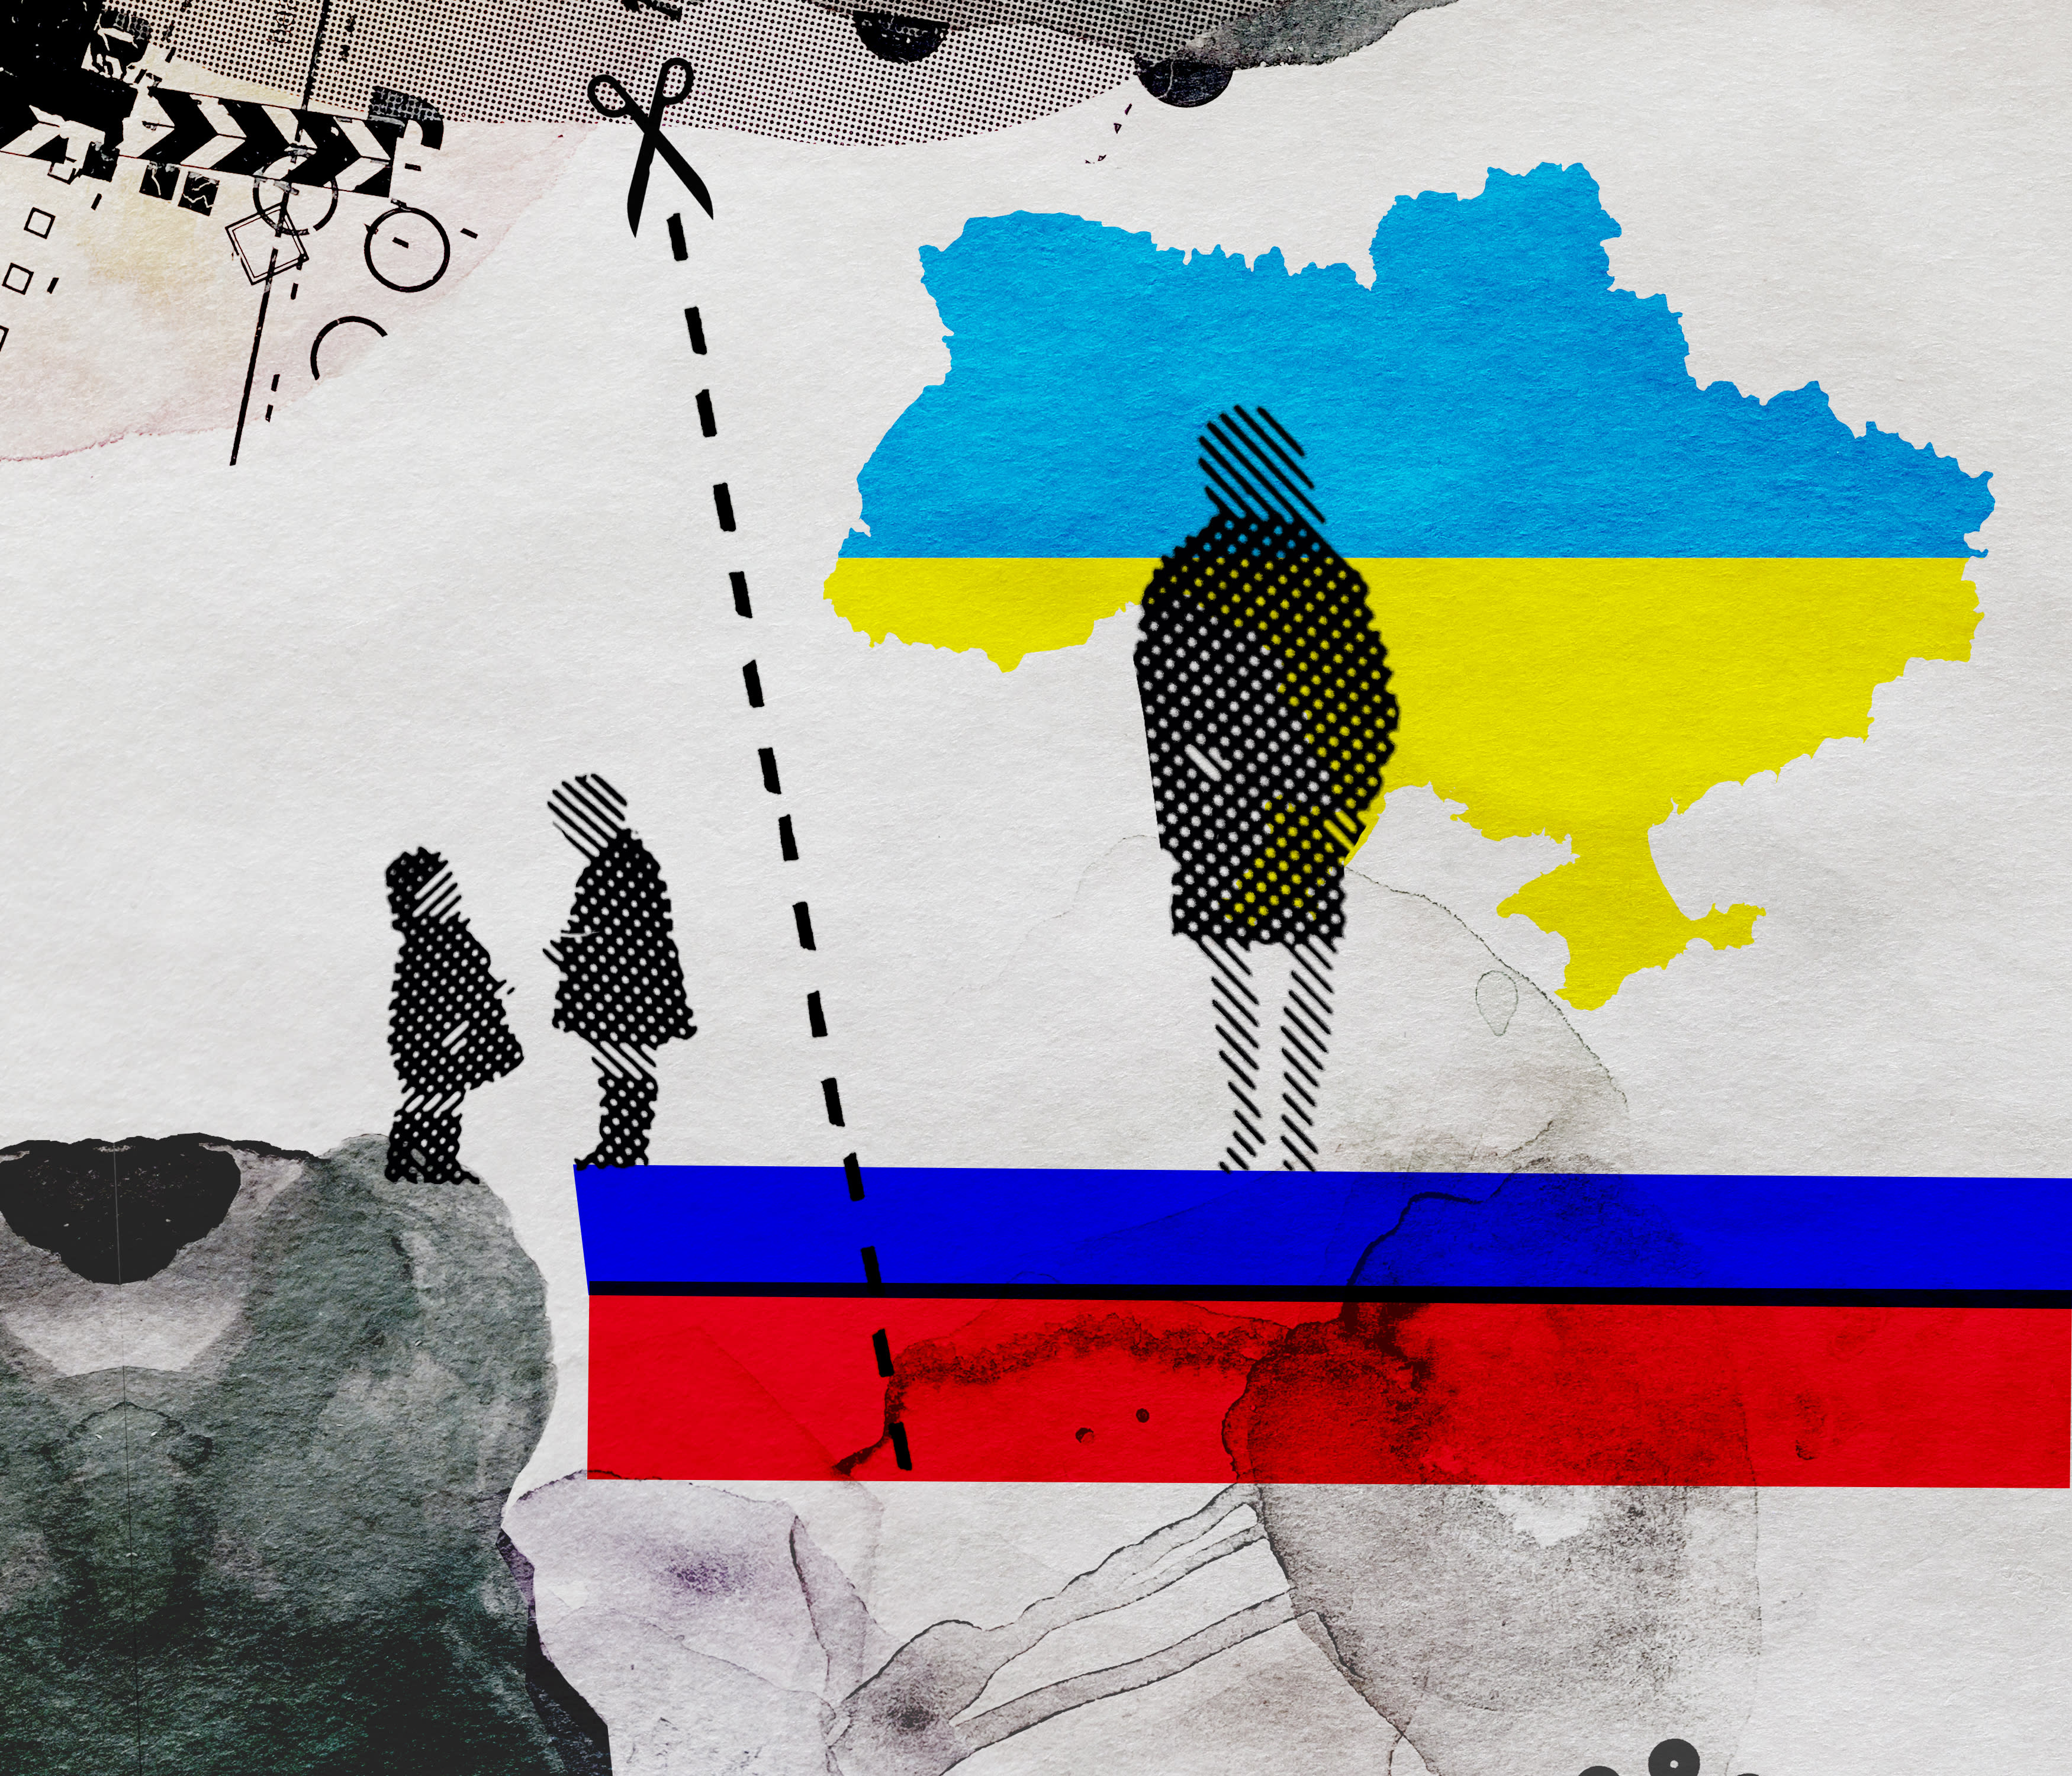 Los servicios infantiles finlandeses detienen a los niños ucranianos mientras la madre va de compras, Rusia cita el caso en la propaganda antioccidental